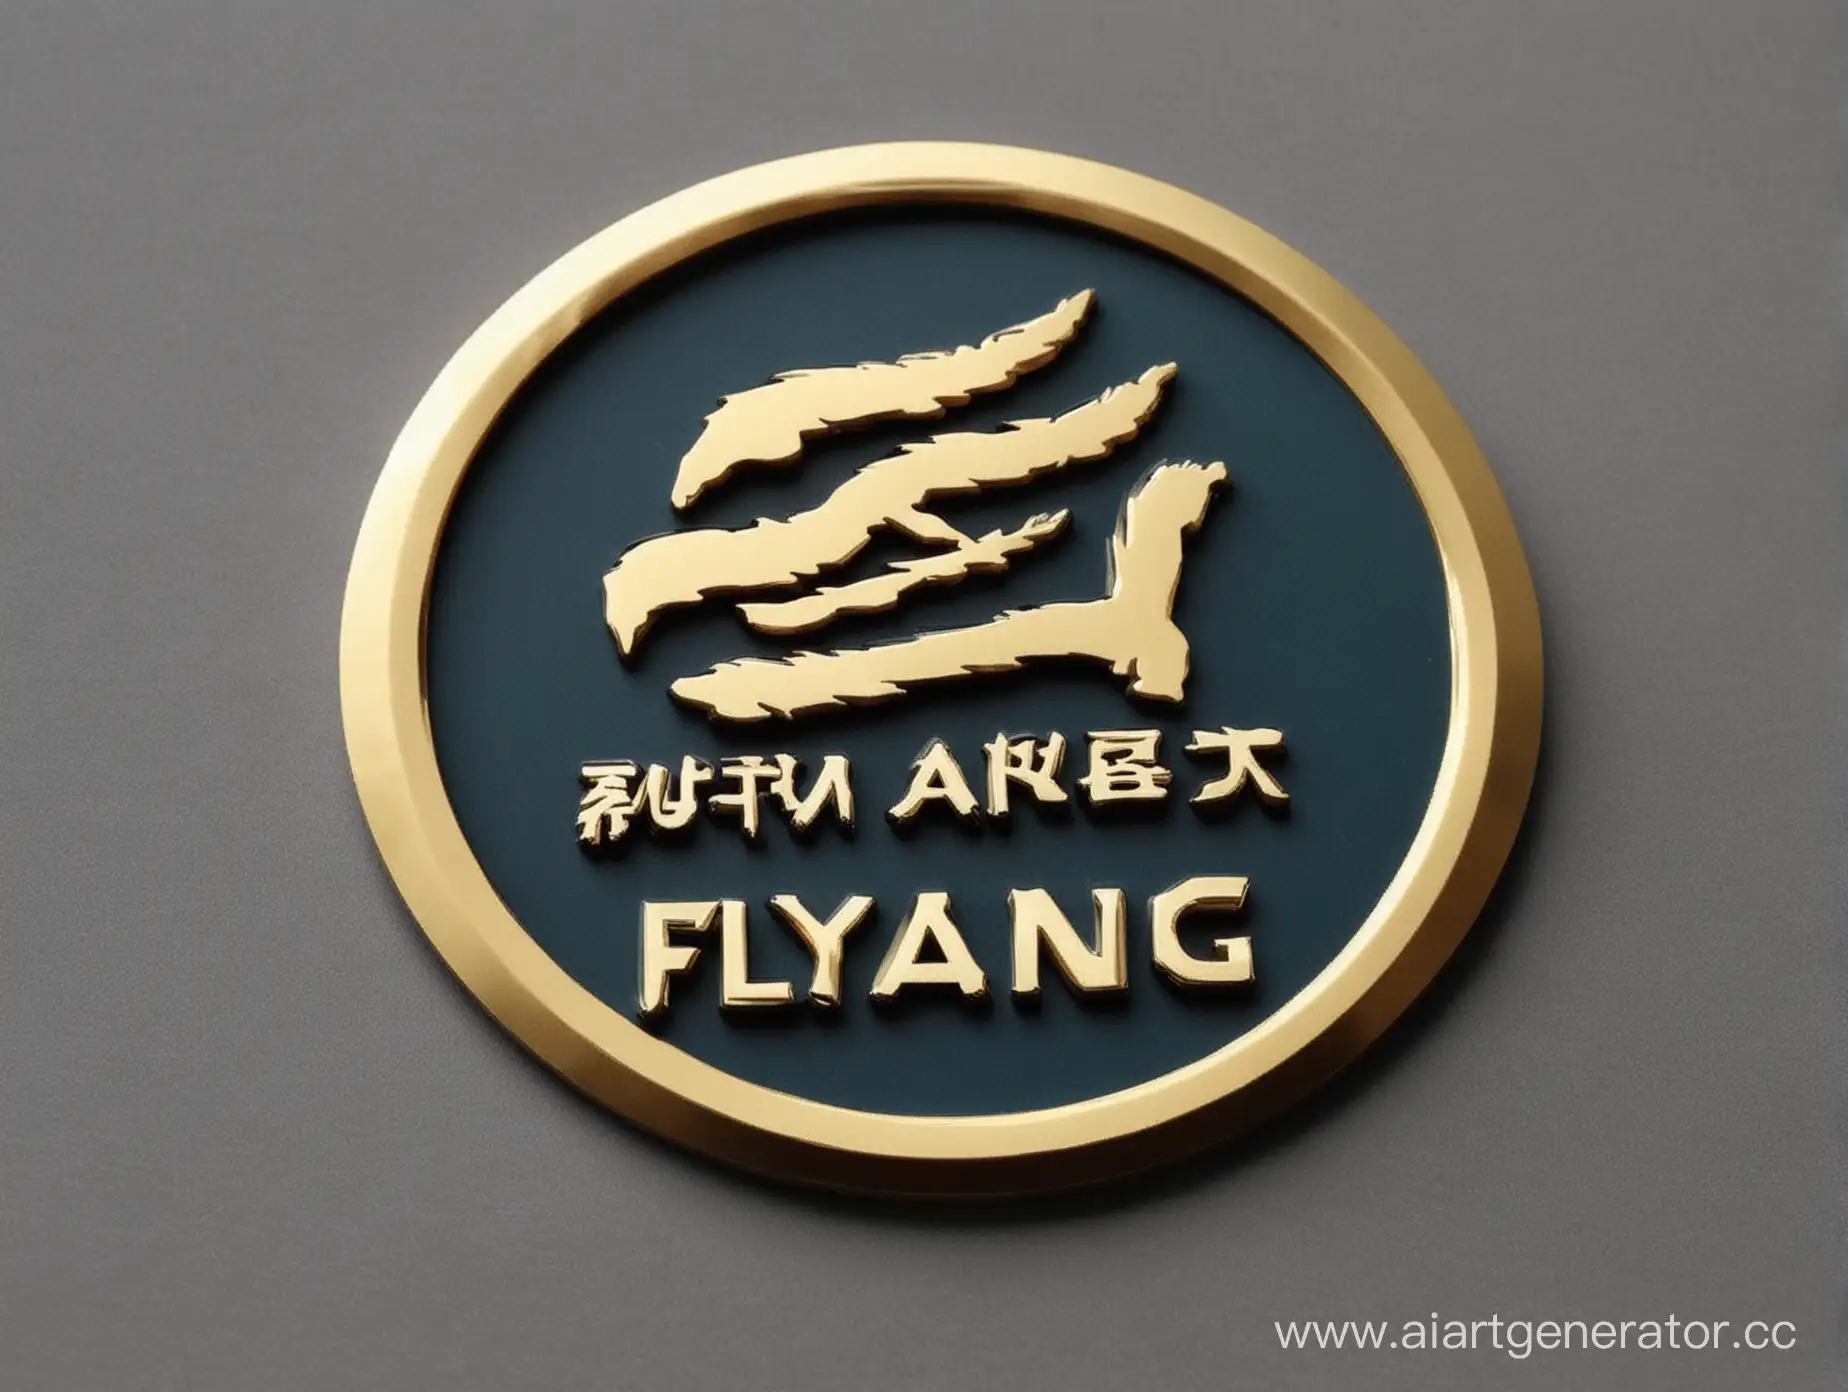 Fuyang-Chinese-Car-Logo-in-Sleek-Design